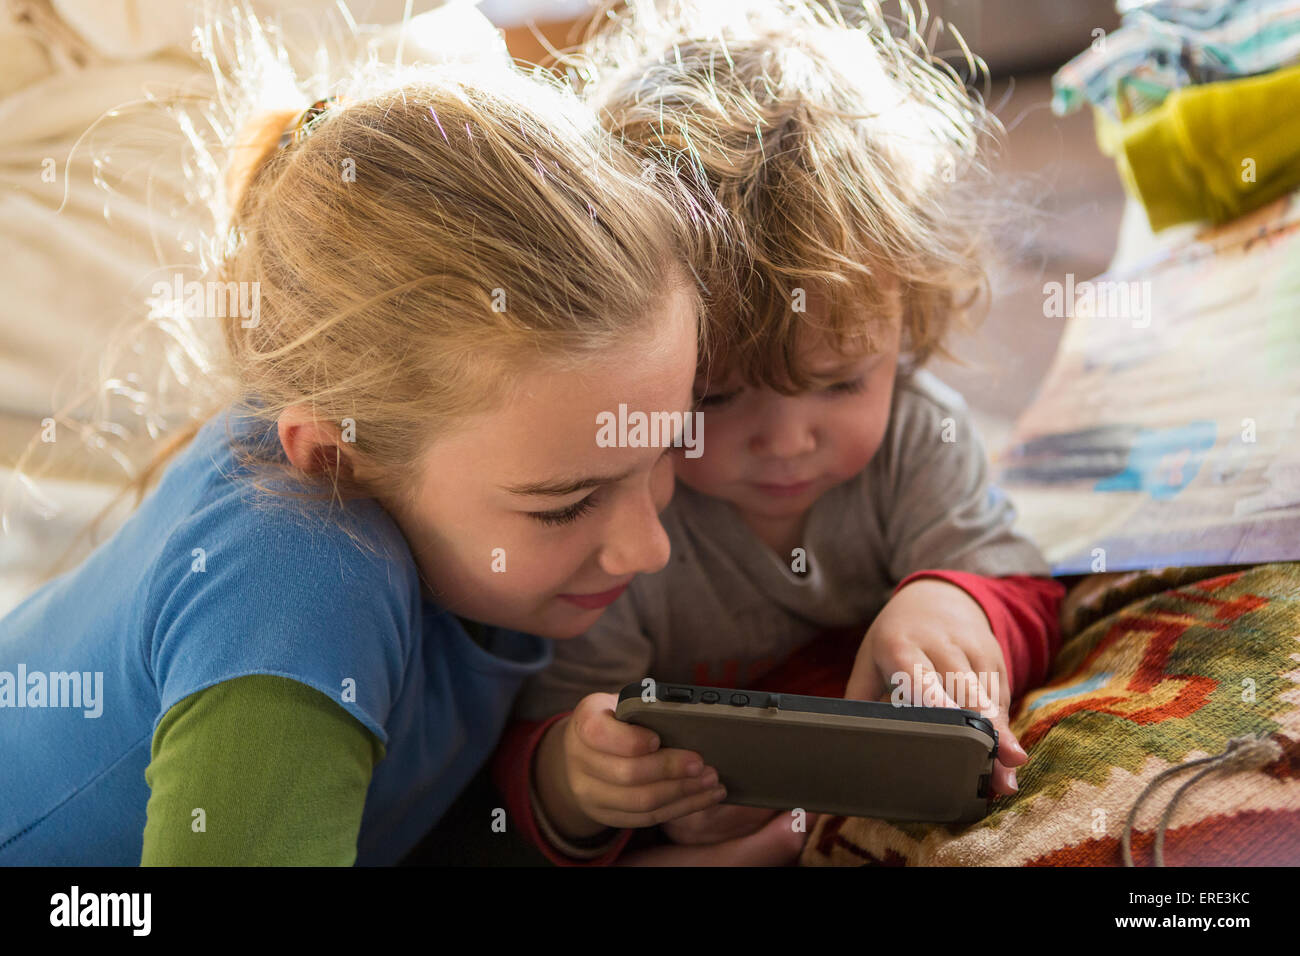 Frère et soeur de race blanche using cell phone on sofa Banque D'Images